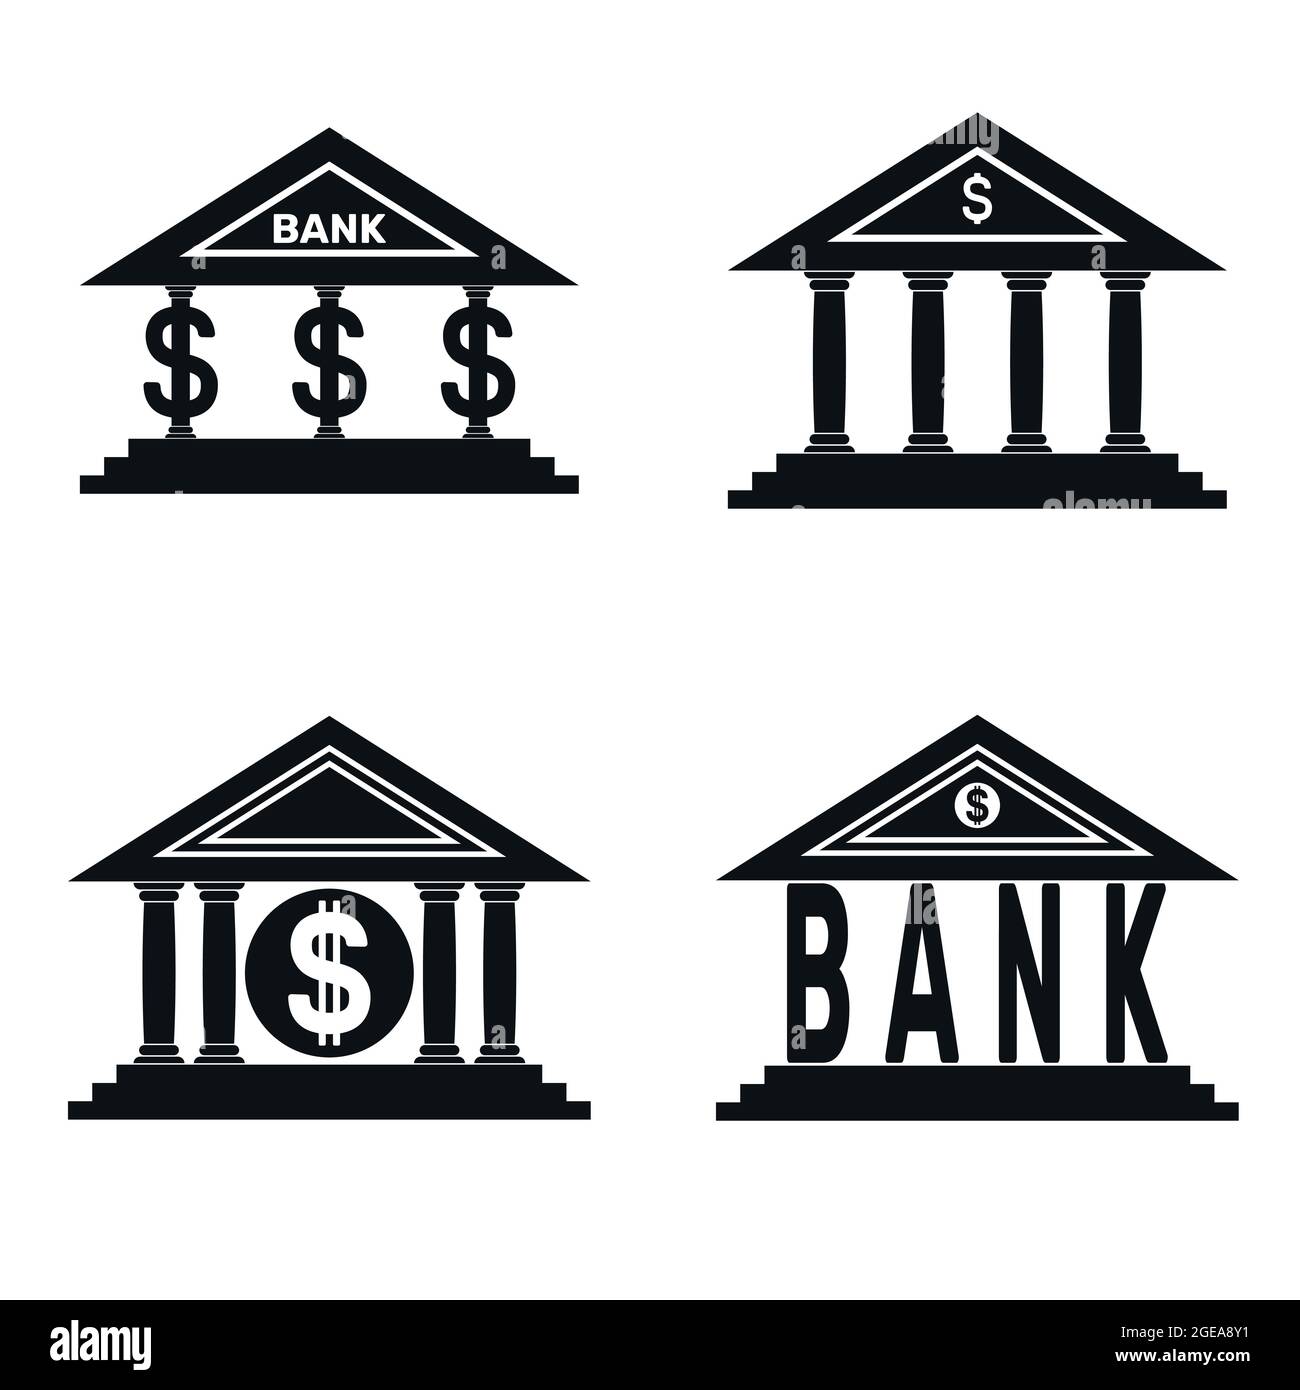 Disegno vettoriale di quattro loghi di banca nera, logo di banca con il simbolo del dollaro americano Illustrazione Vettoriale